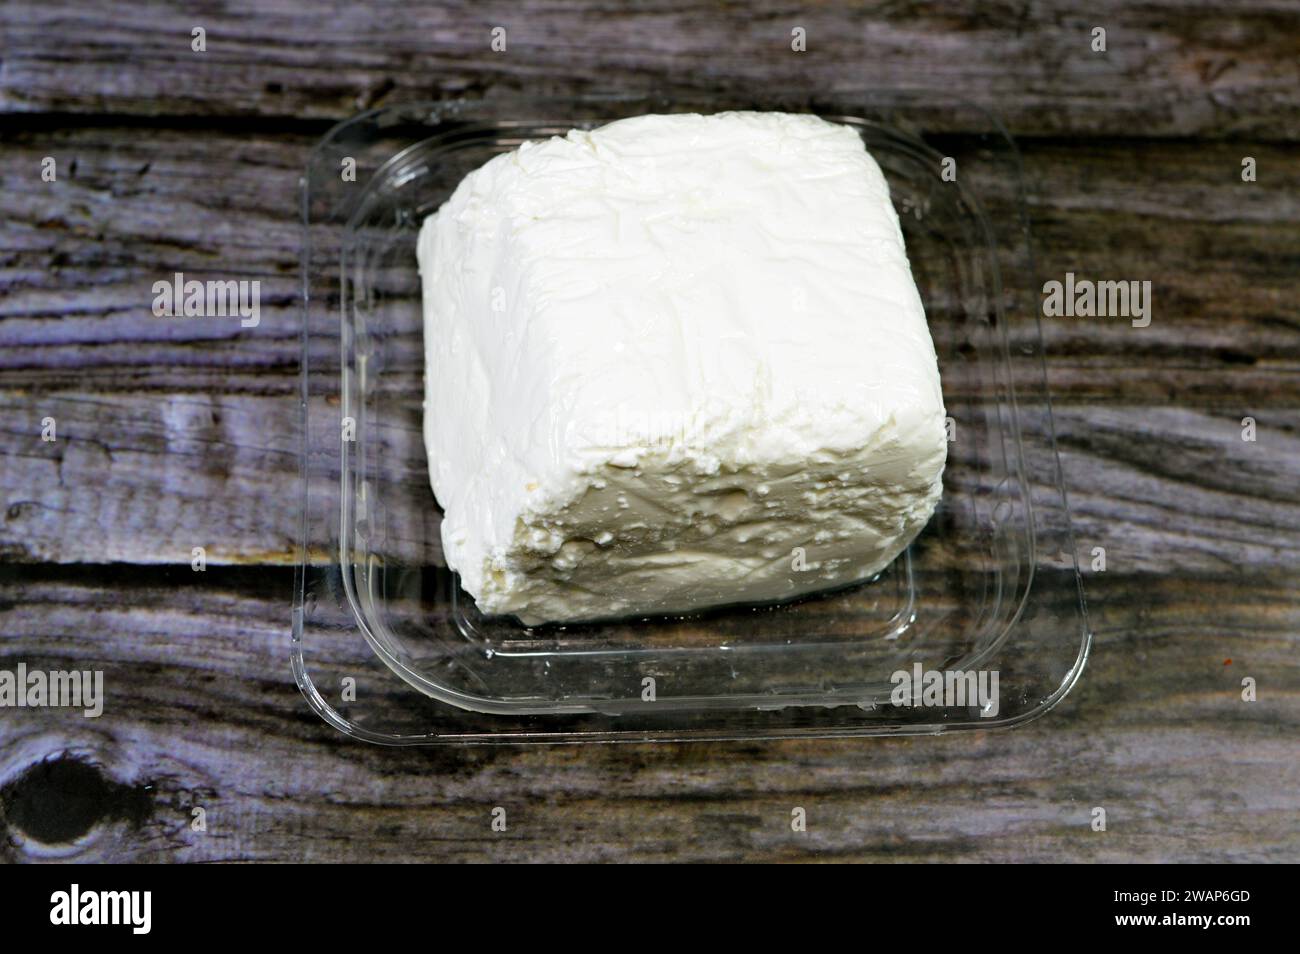 Un cube de fromage blanc à faible teneur en sel, une touche savoureuse à une variété de recettes, utilisé pour préparer des salades, des pizzas, des sandwichs, des pâtes et plus encore, riche nutriment A. Banque D'Images